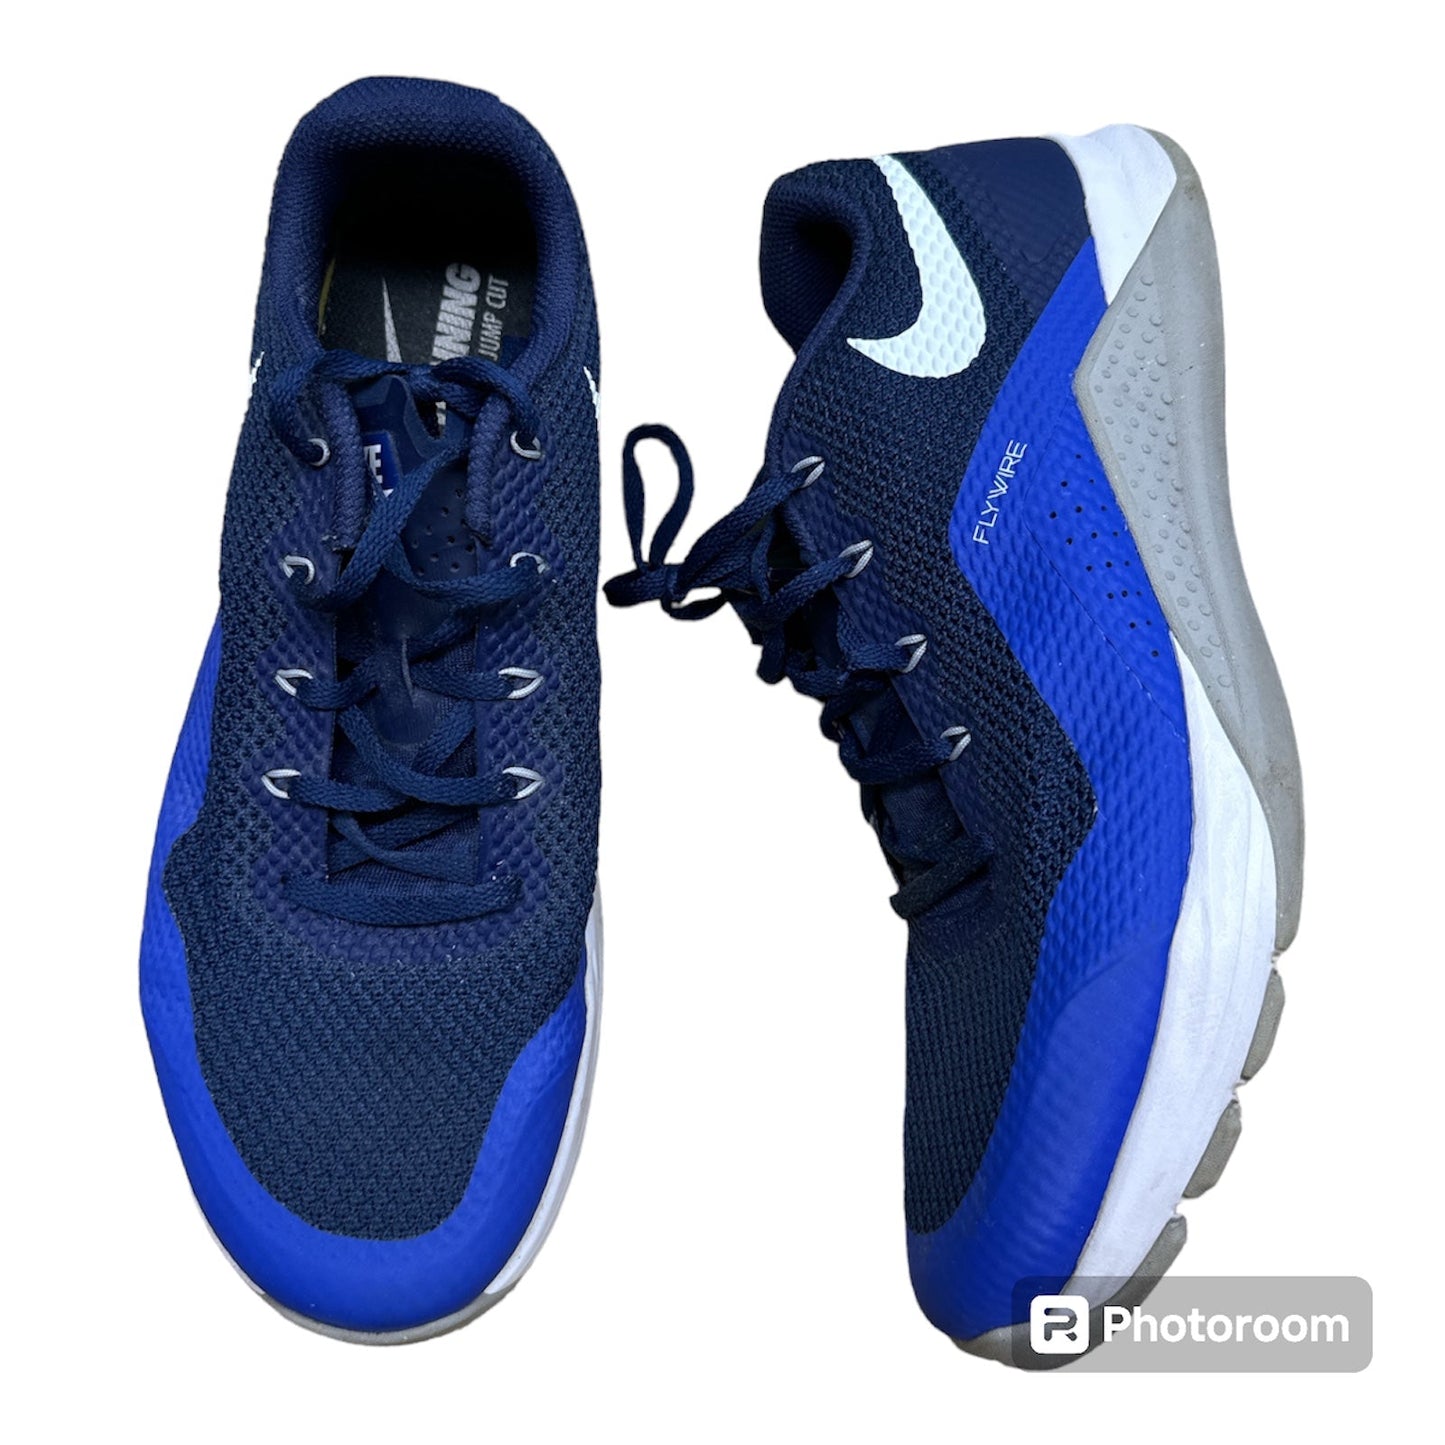 Blue Shoes Athletic Nike, Size 10.5